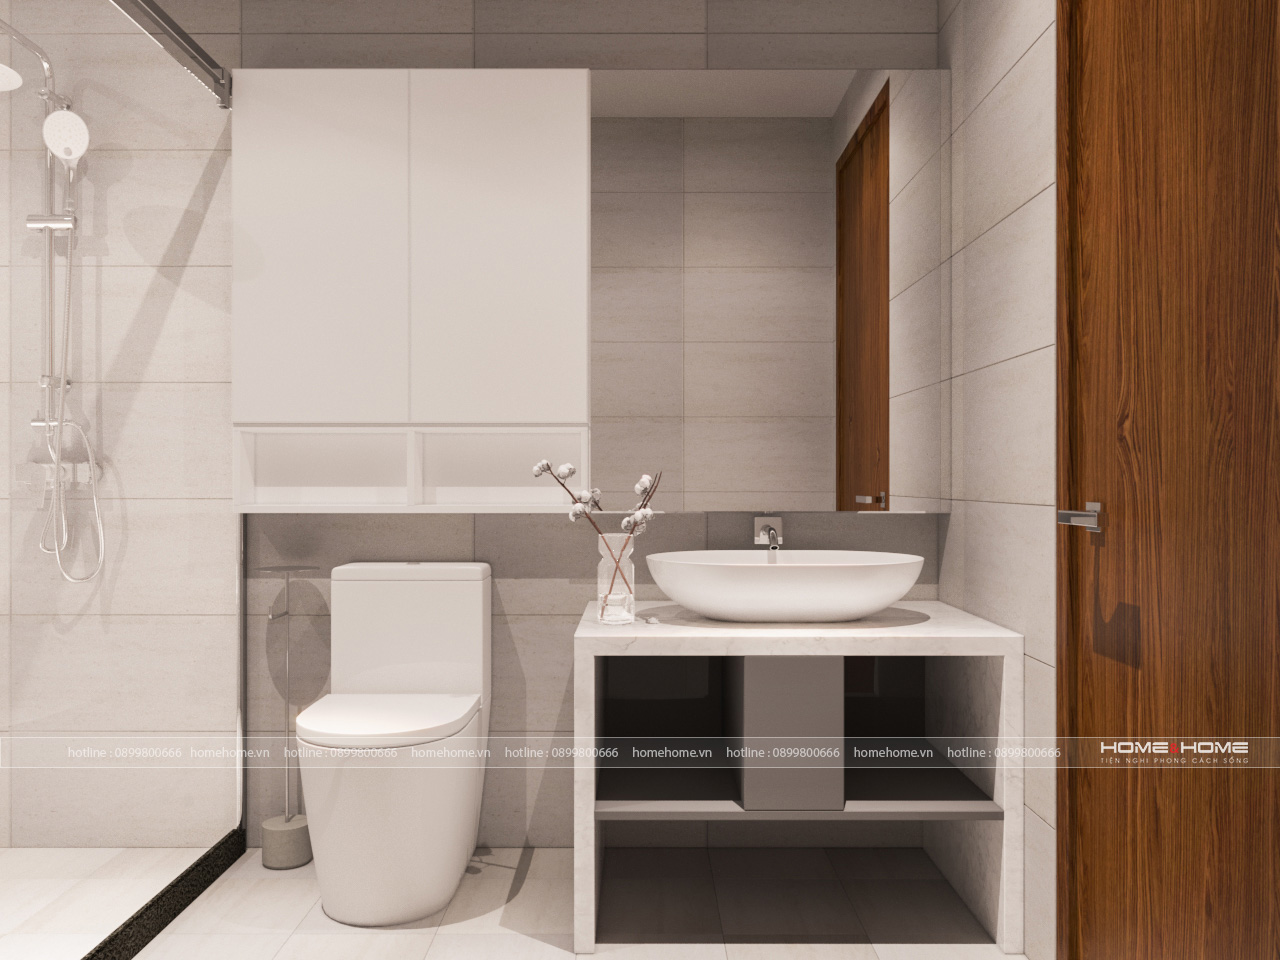 Cùng tham khảo mẫu nhà vệ sinh đẹp tại năm 2024 để trang trí cho không gian phòng tắm của bạn trở nên đẹp hơn và tiện nghi hơn nhé! Các mẫu nhà vệ sinh đẹp sẽ mang đến cho bạn sự thoải mái khi sử dụng và tạo nên không gian tươi sáng, sạch sẽ cho ngôi nhà của bạn.